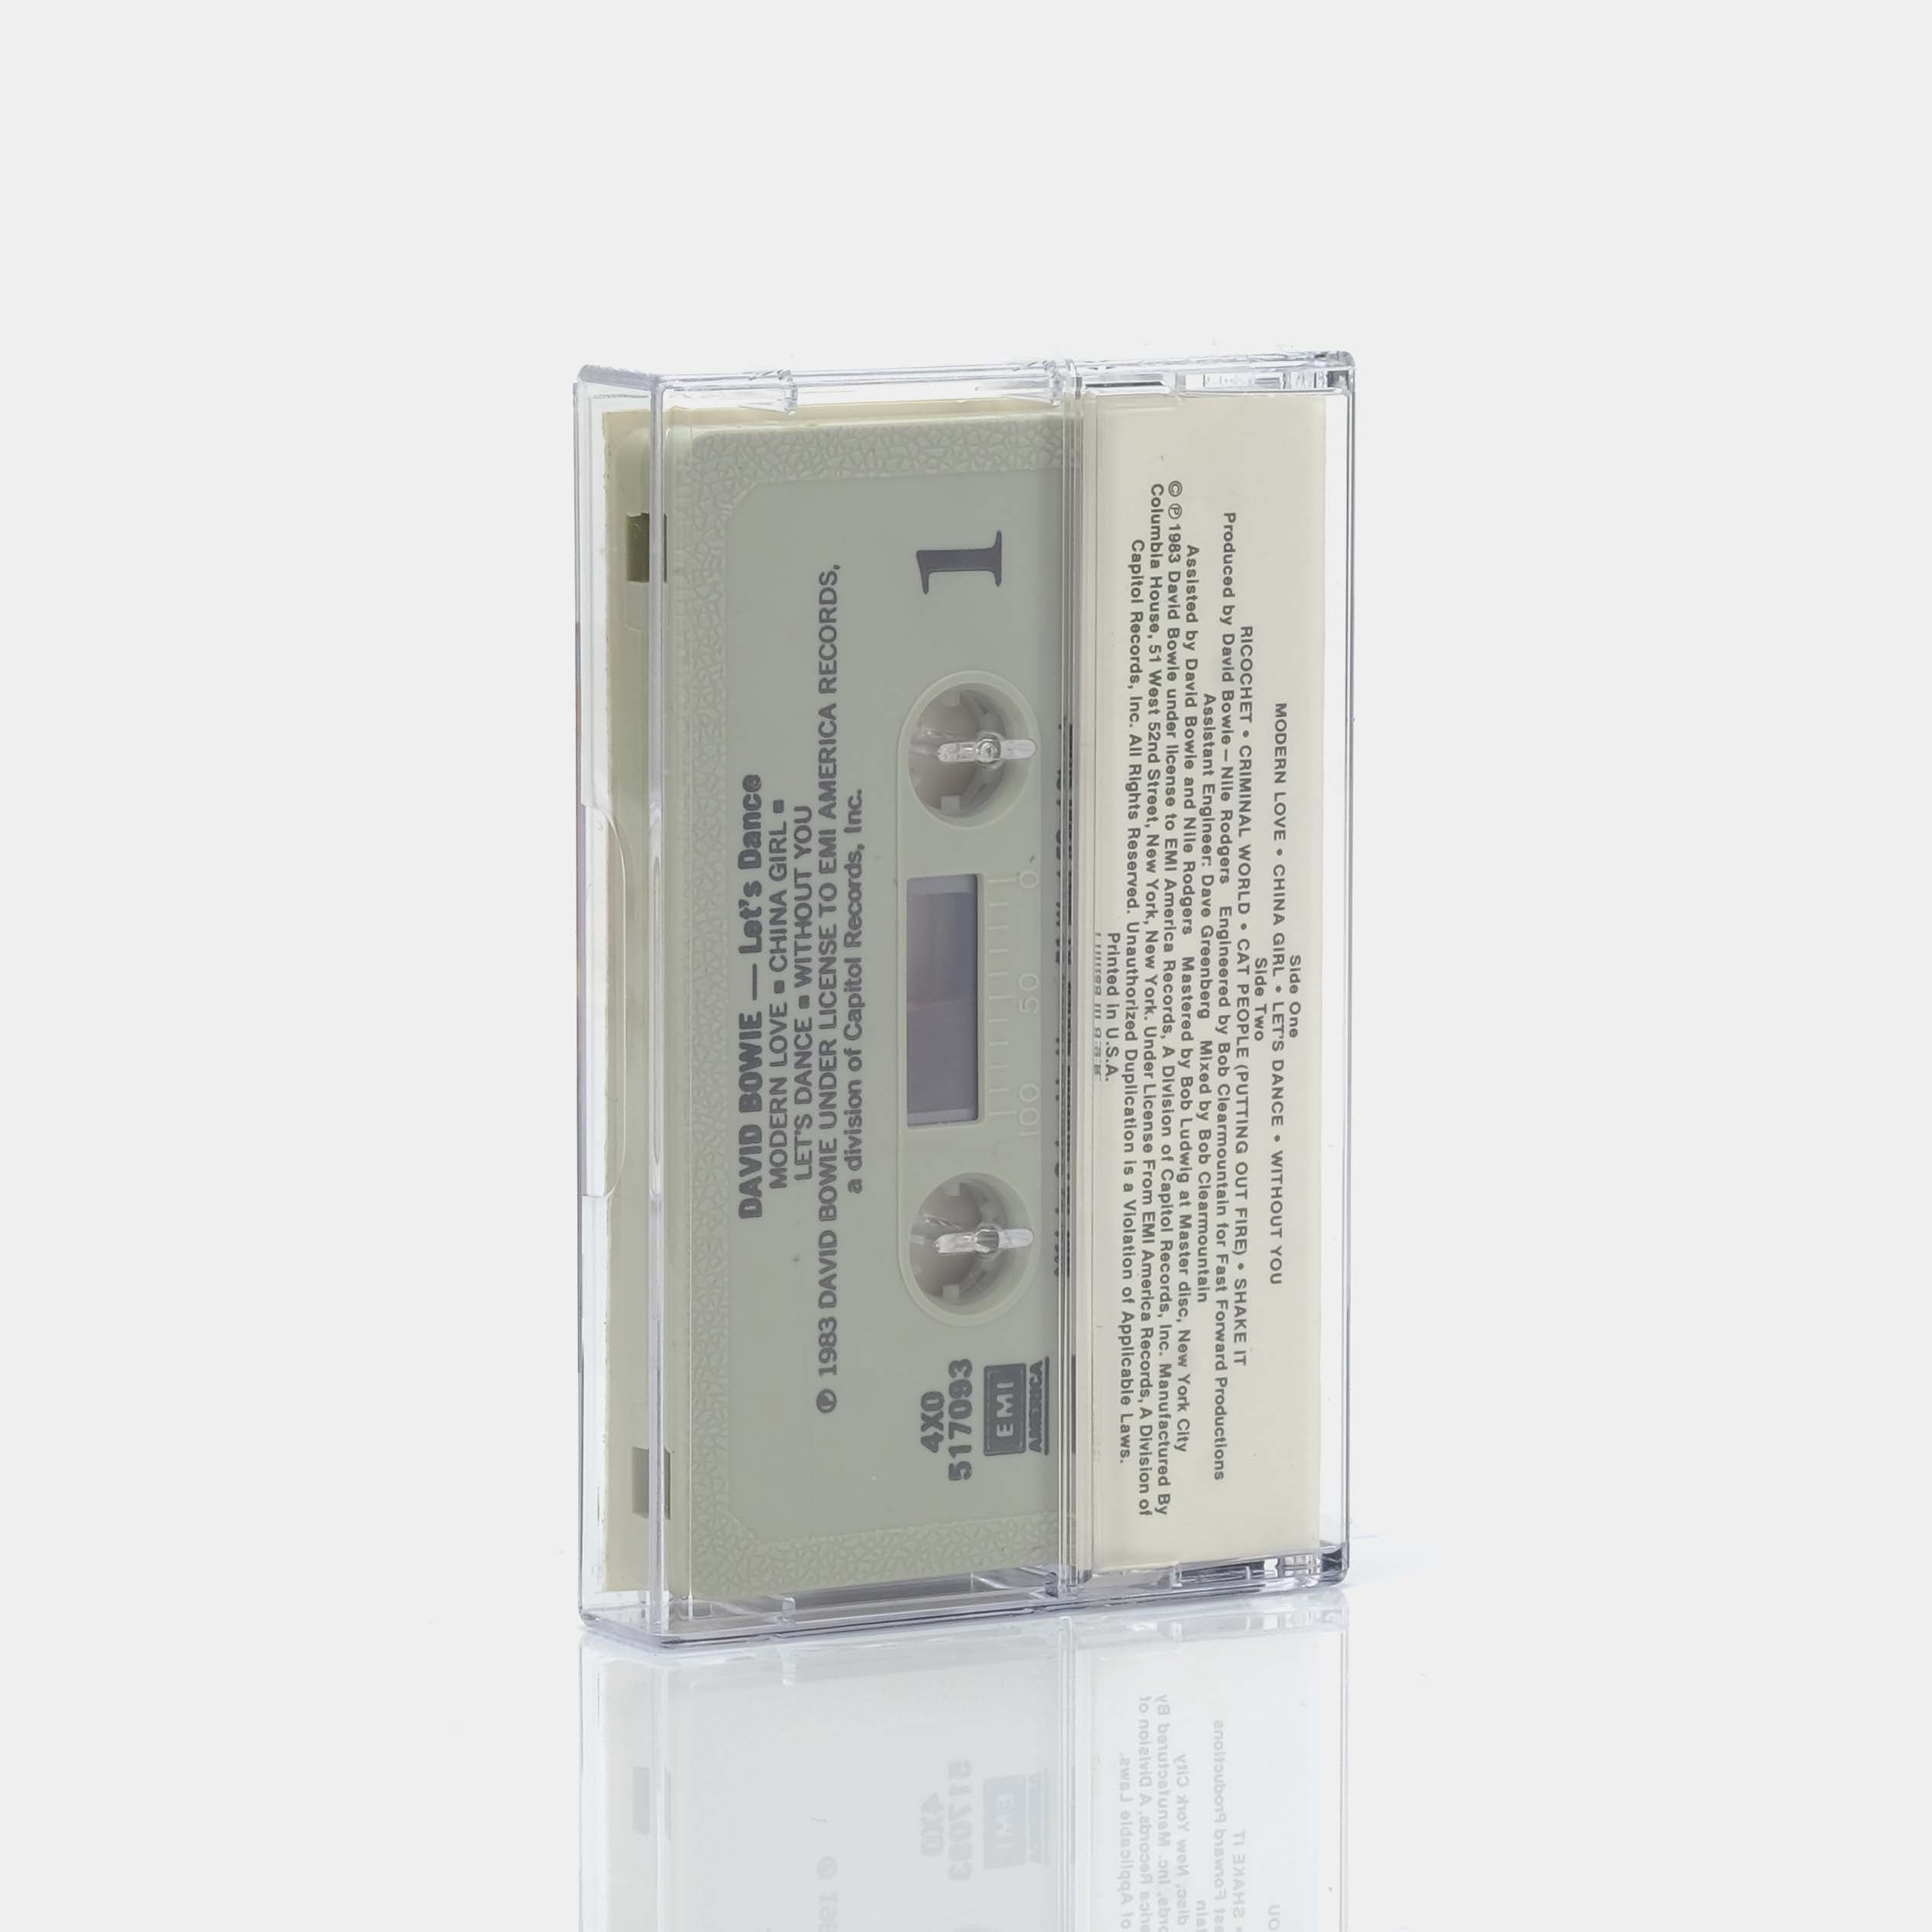 David Bowie - Let's Dance Cassette Tape